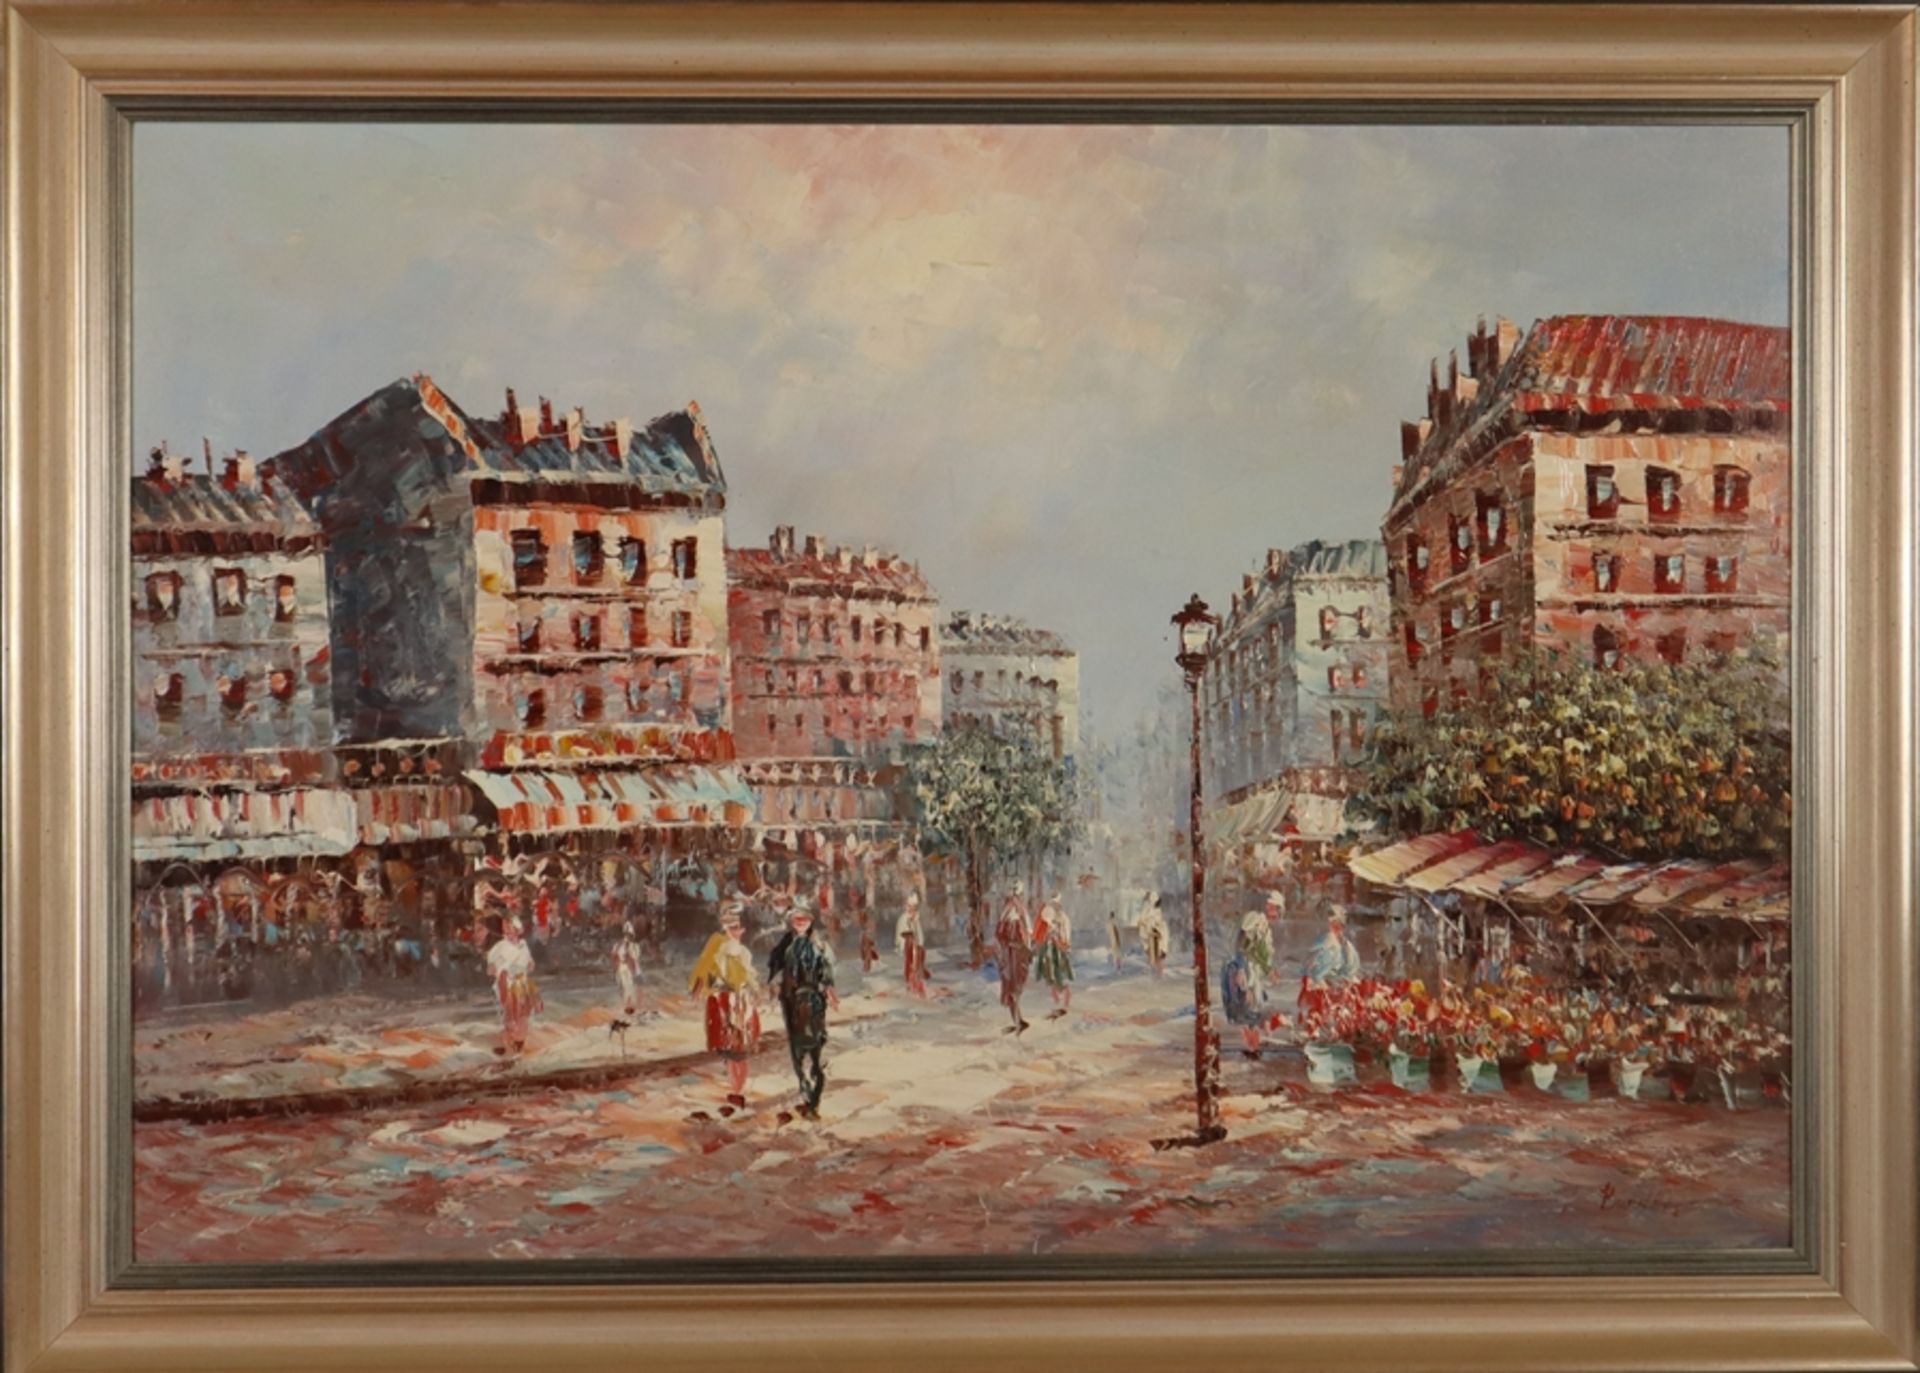 Burnett, Louis Anthony (1907 - 1999 / amerikanischer Maler) - Belebte Pariser Flaniermeile, Öl auf